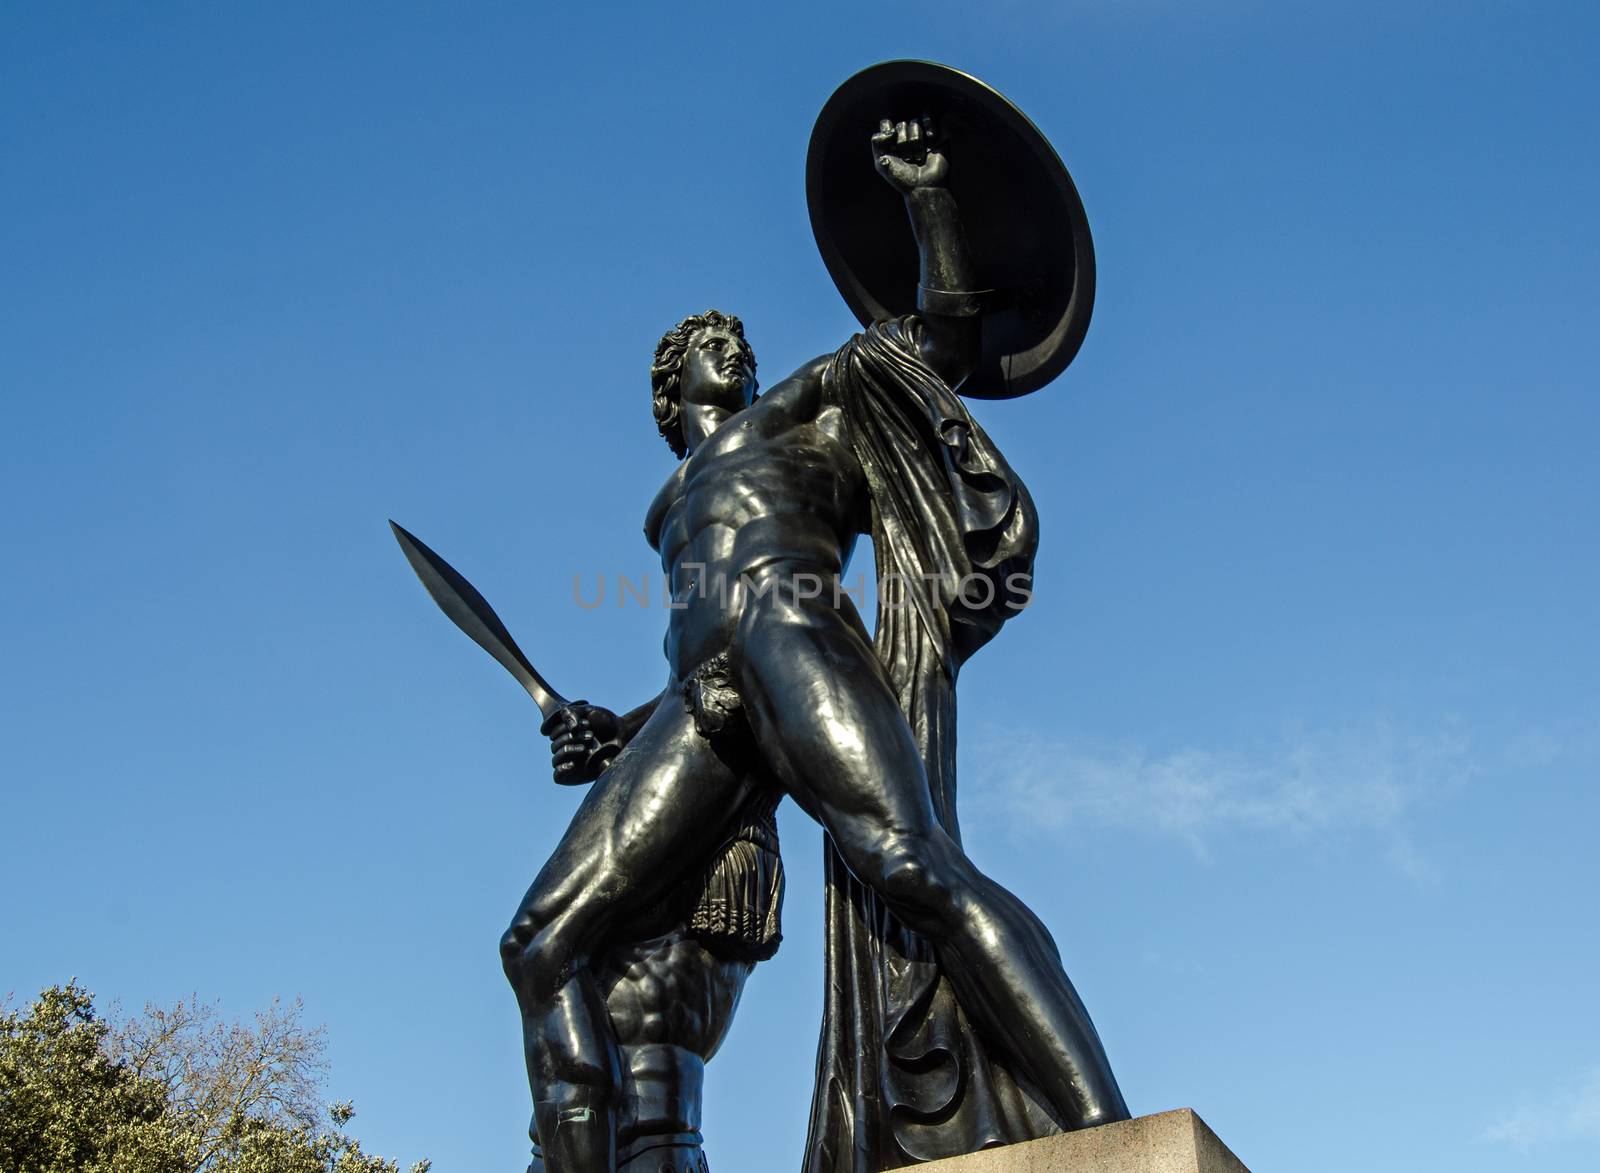 Wellington Monument statue of Achilles by BasPhoto